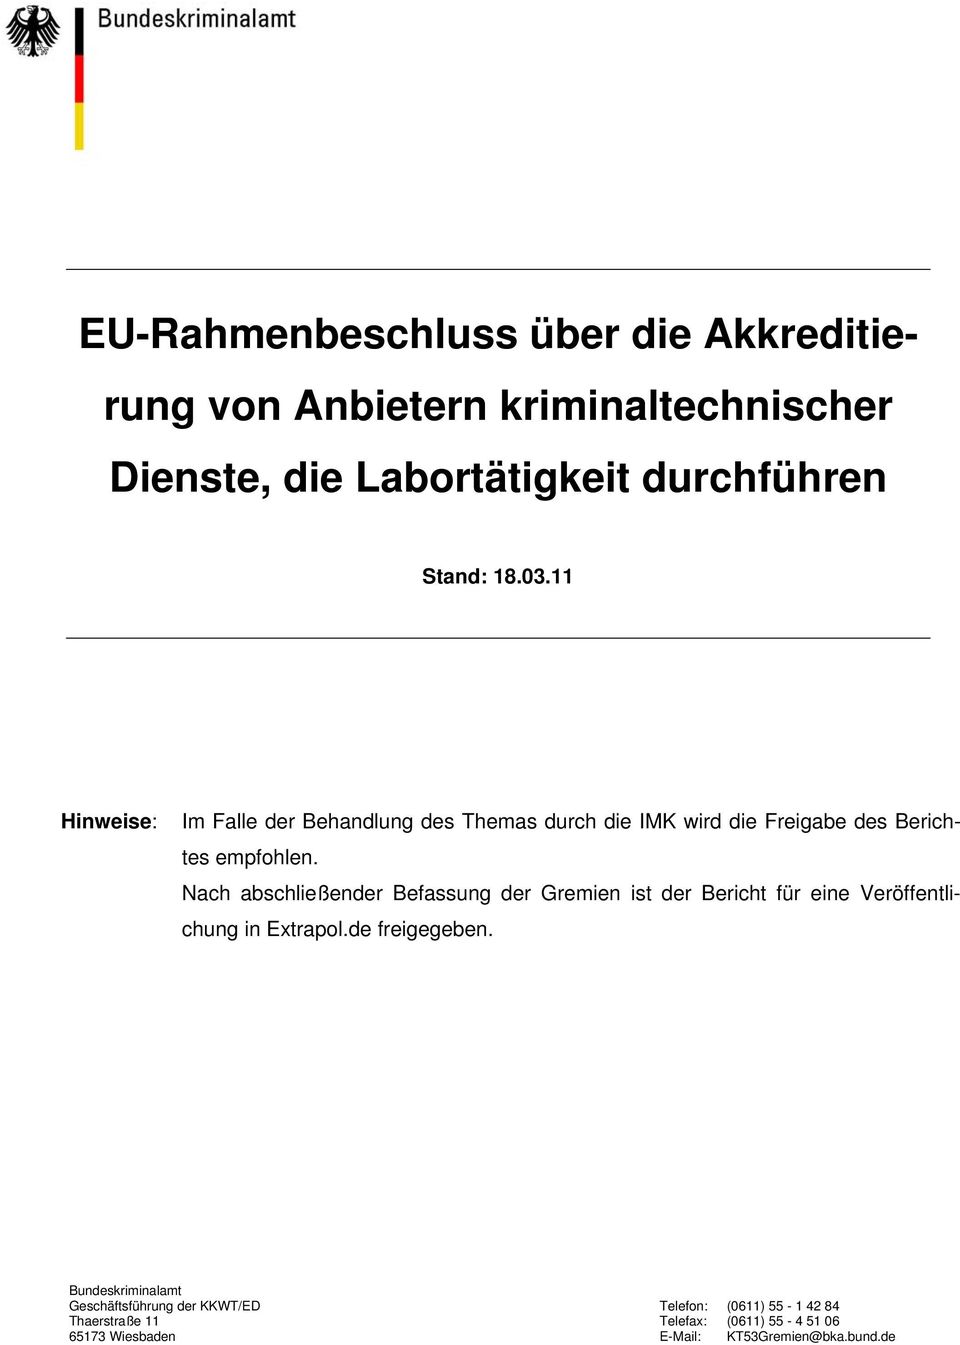 Nach abschließender Befassung der Gremien ist der Bericht für eine Veröffentlichung in Extrapol.de freigegeben.